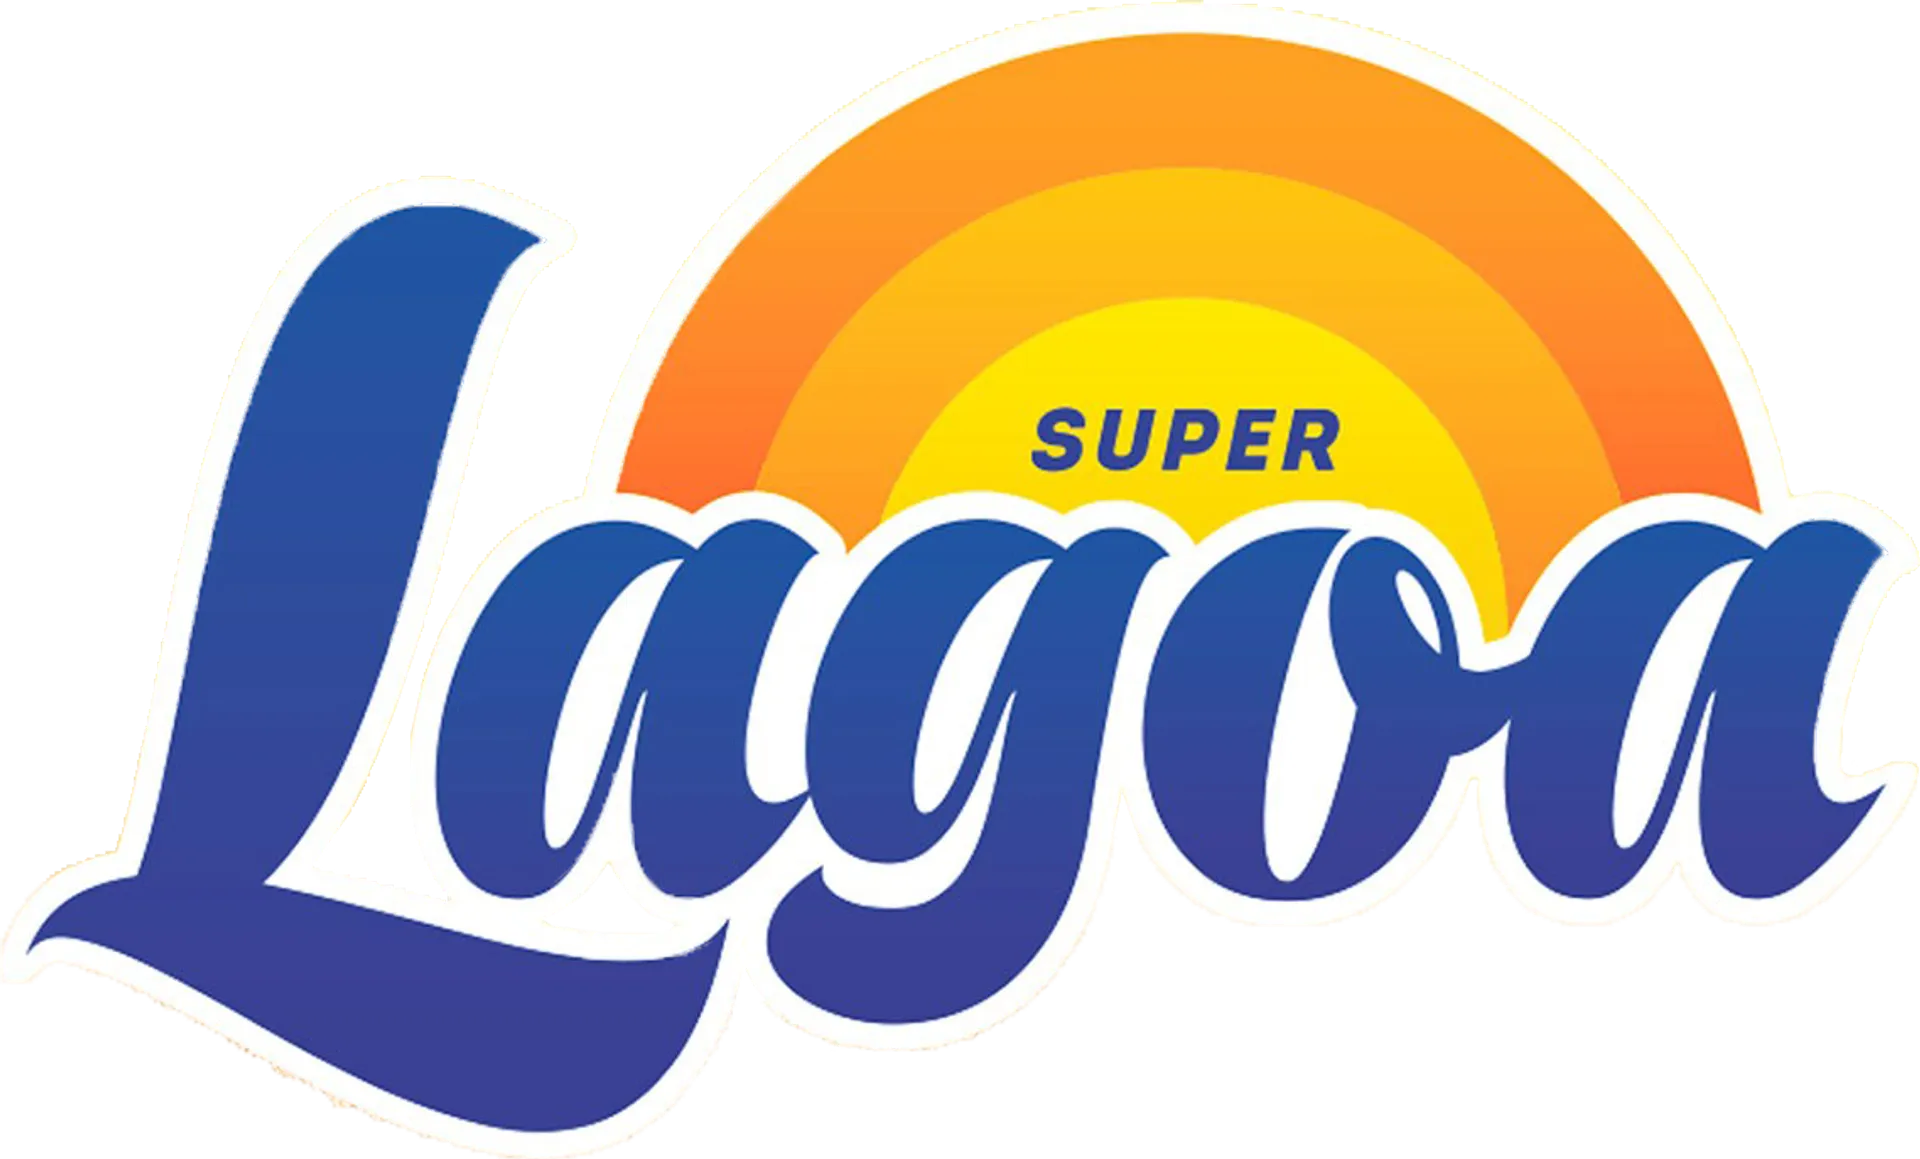 LAGOA logo